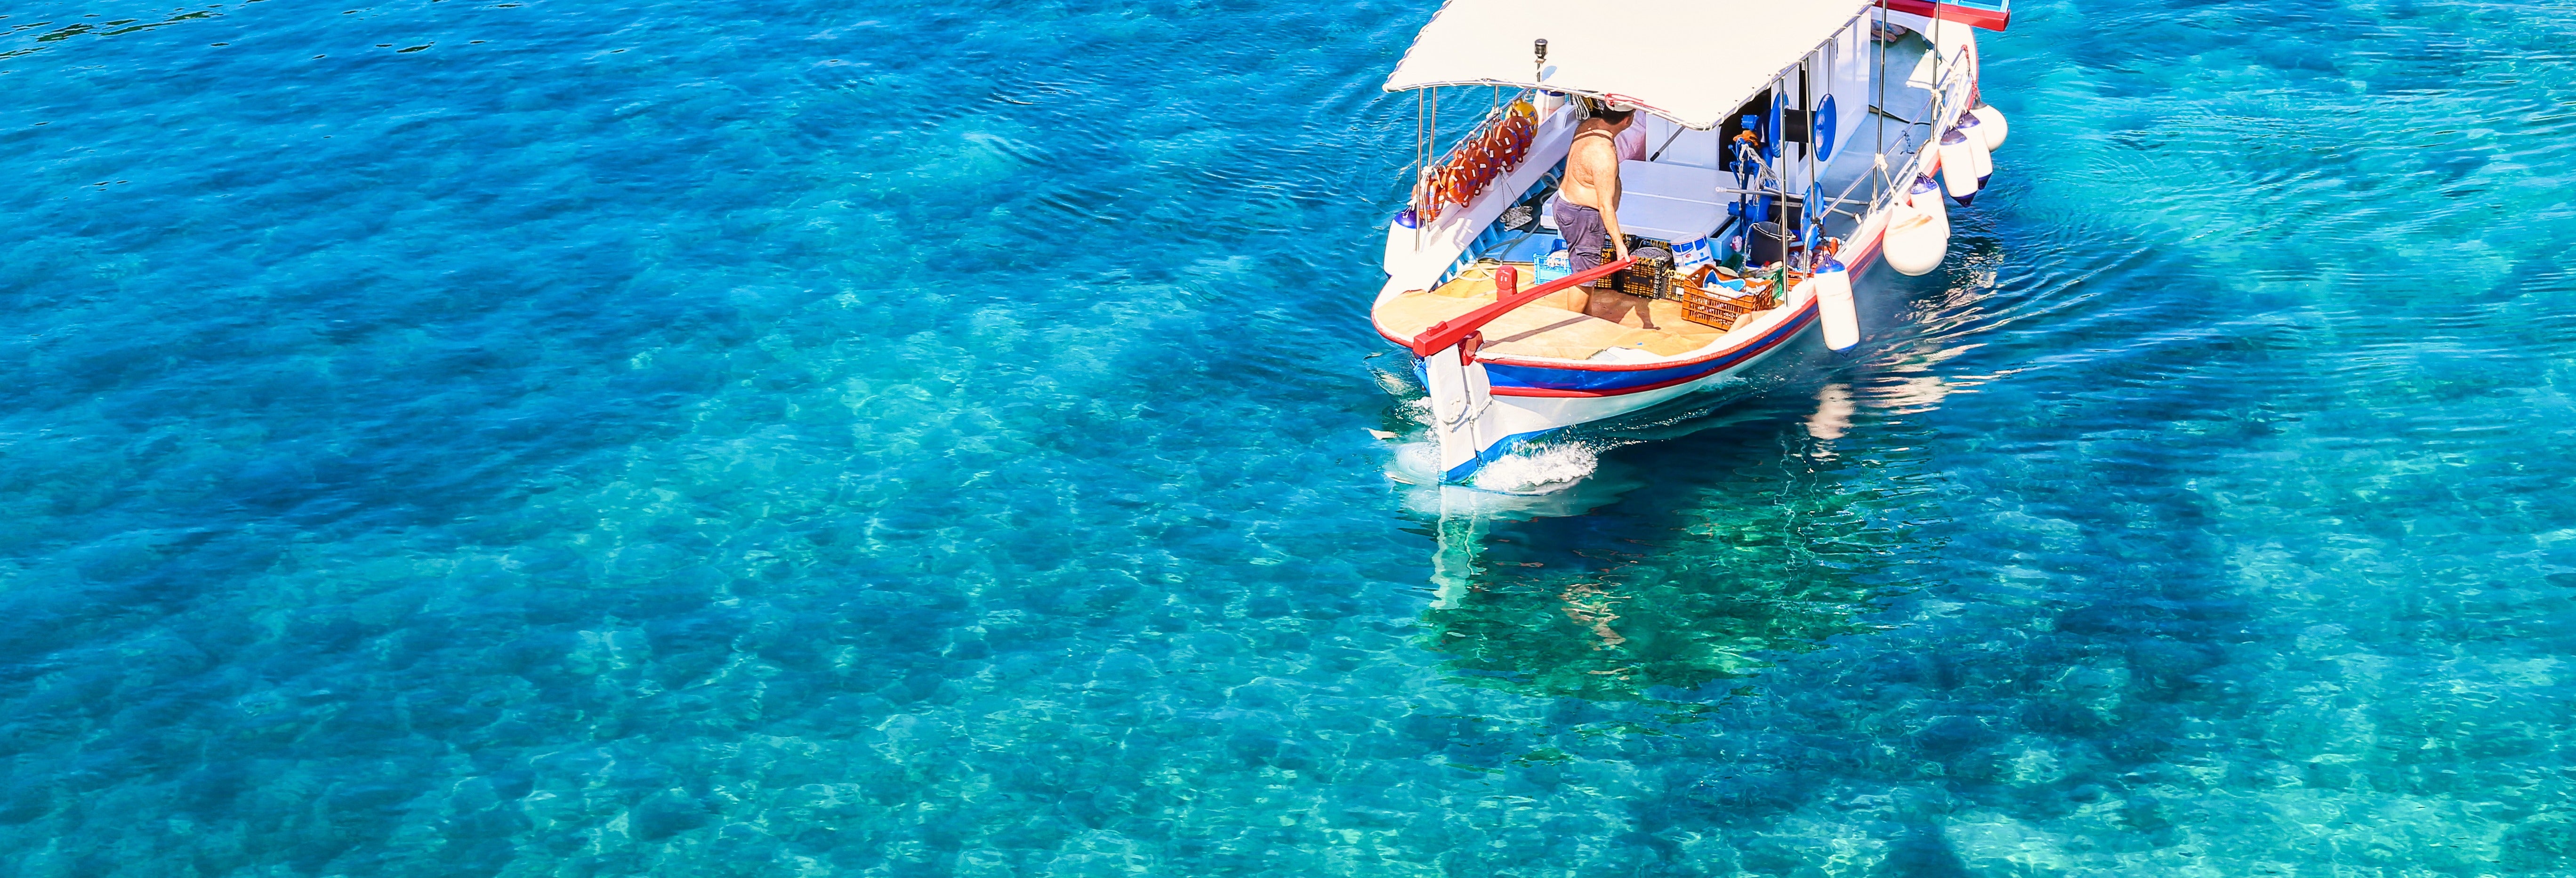 Passeio de barco pelas praias de Ibiza